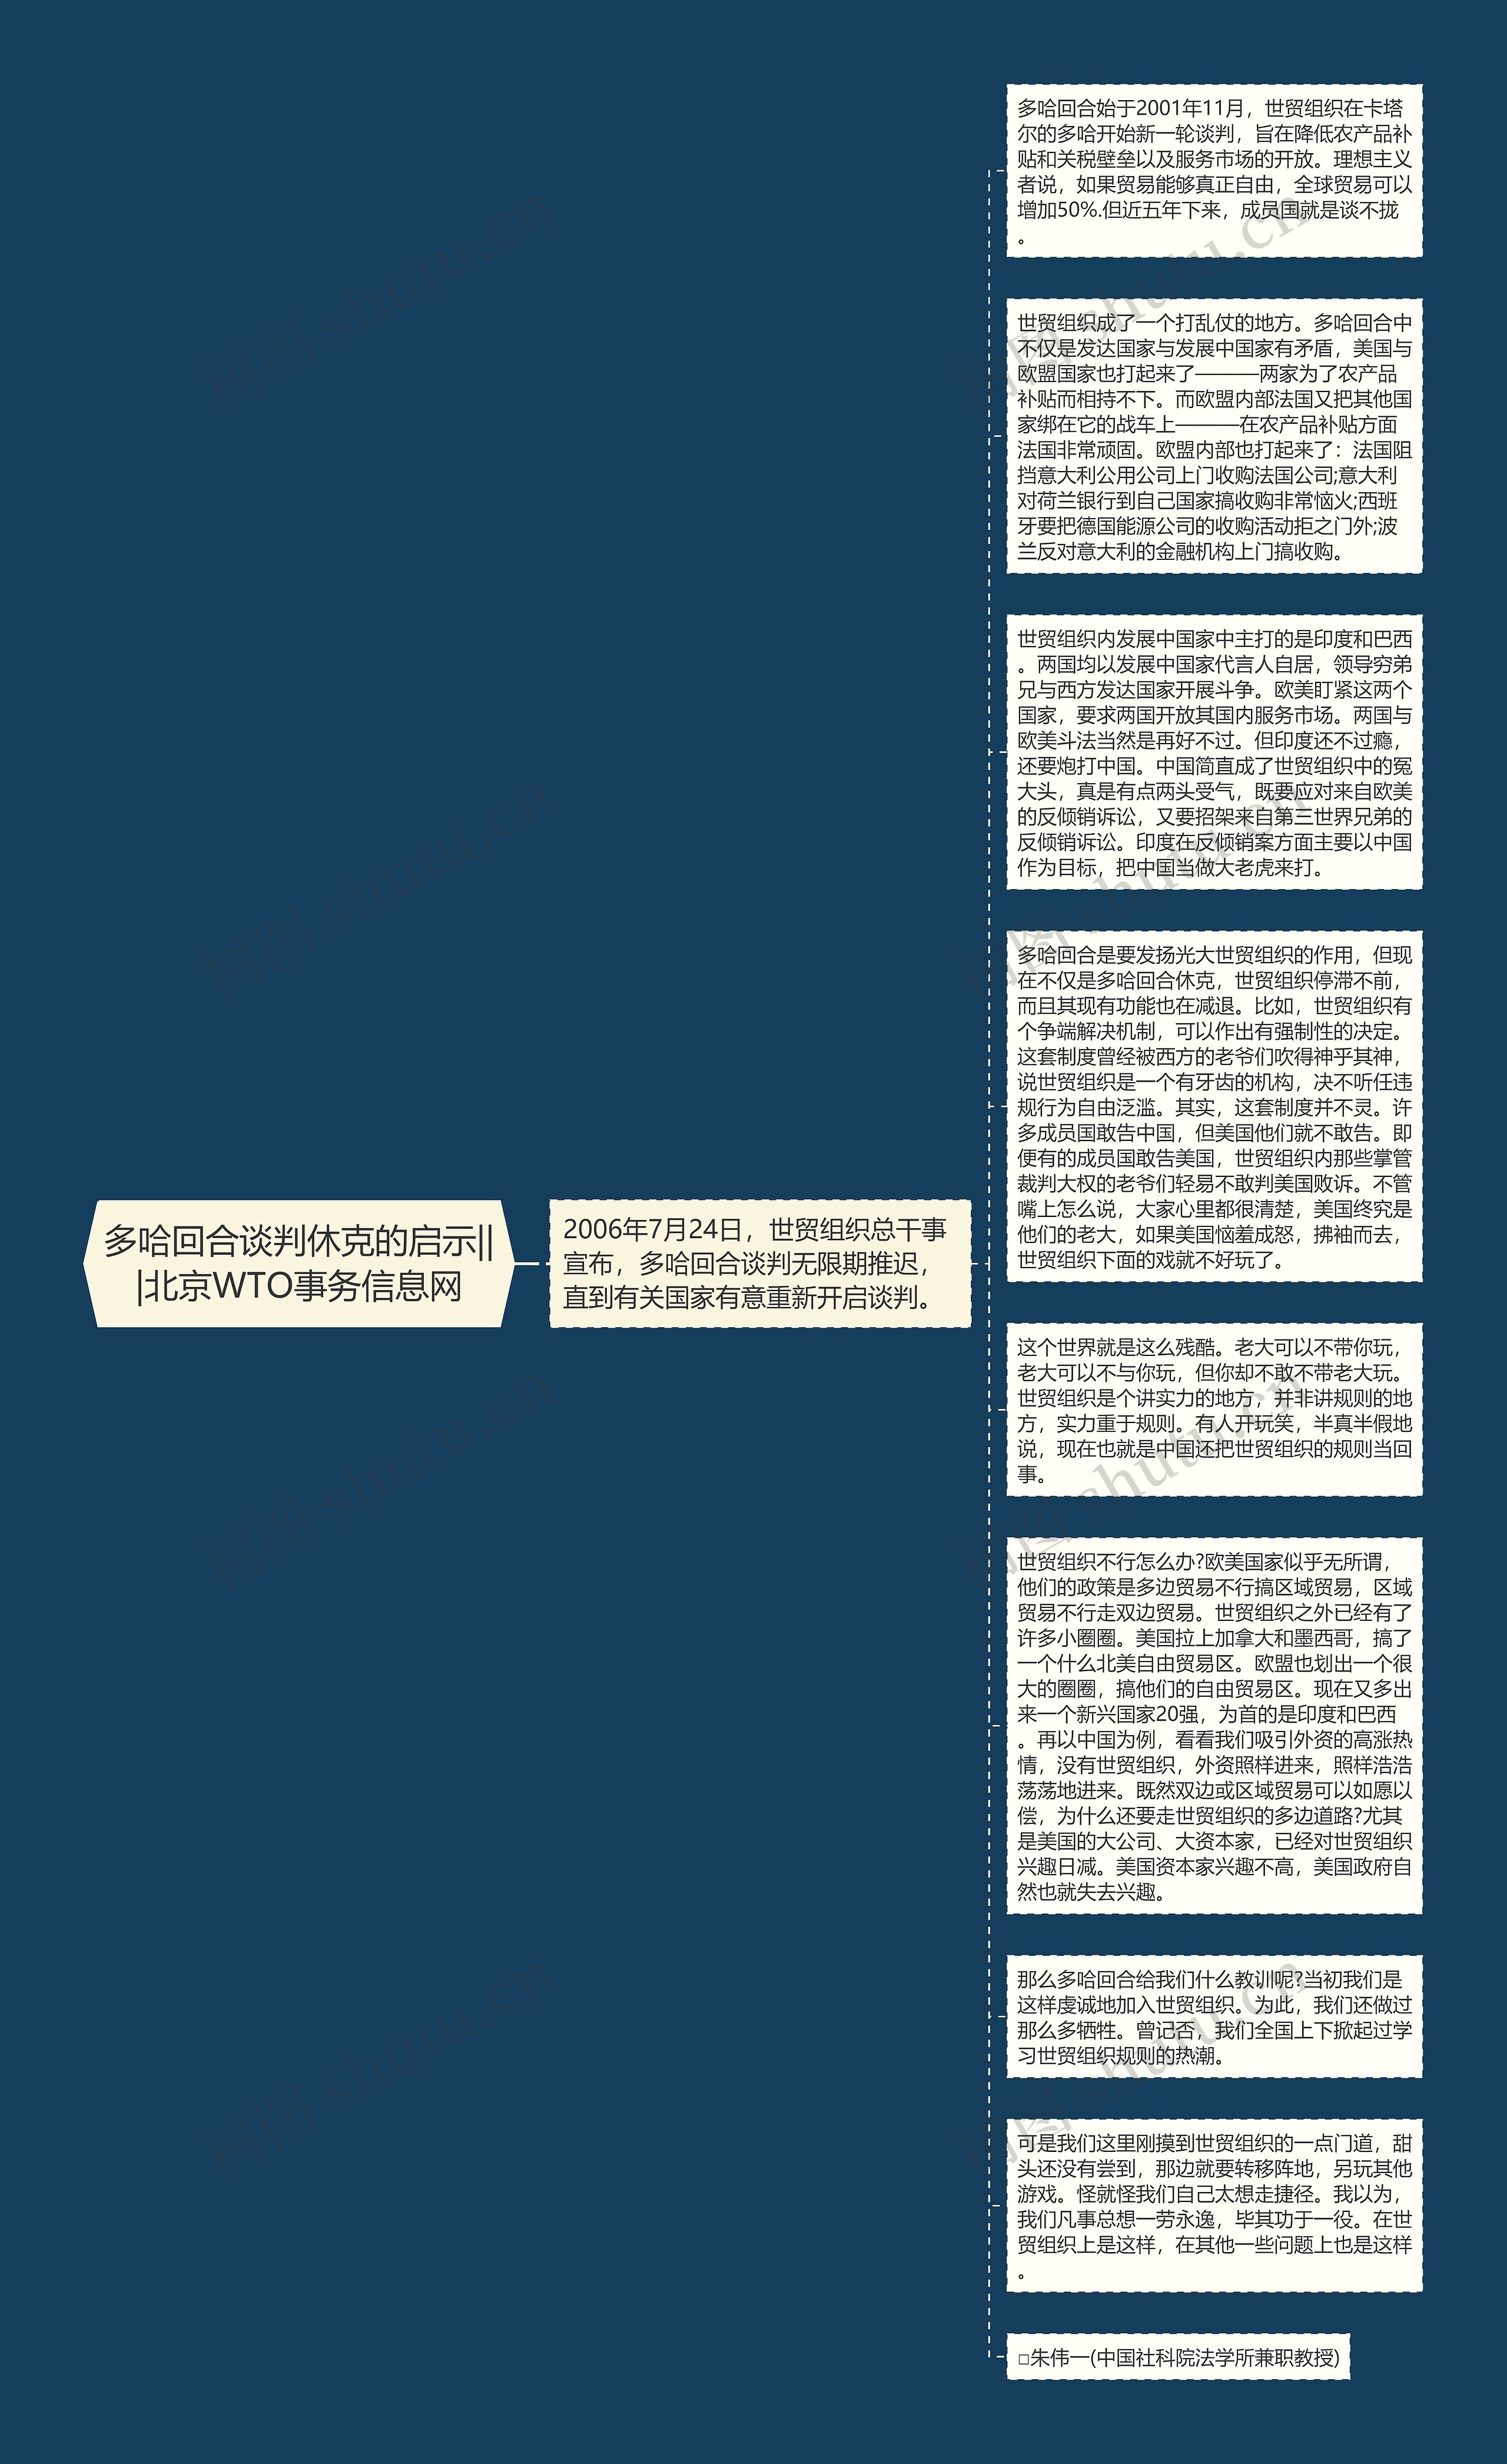 多哈回合谈判休克的启示|||北京WTO事务信息网思维导图